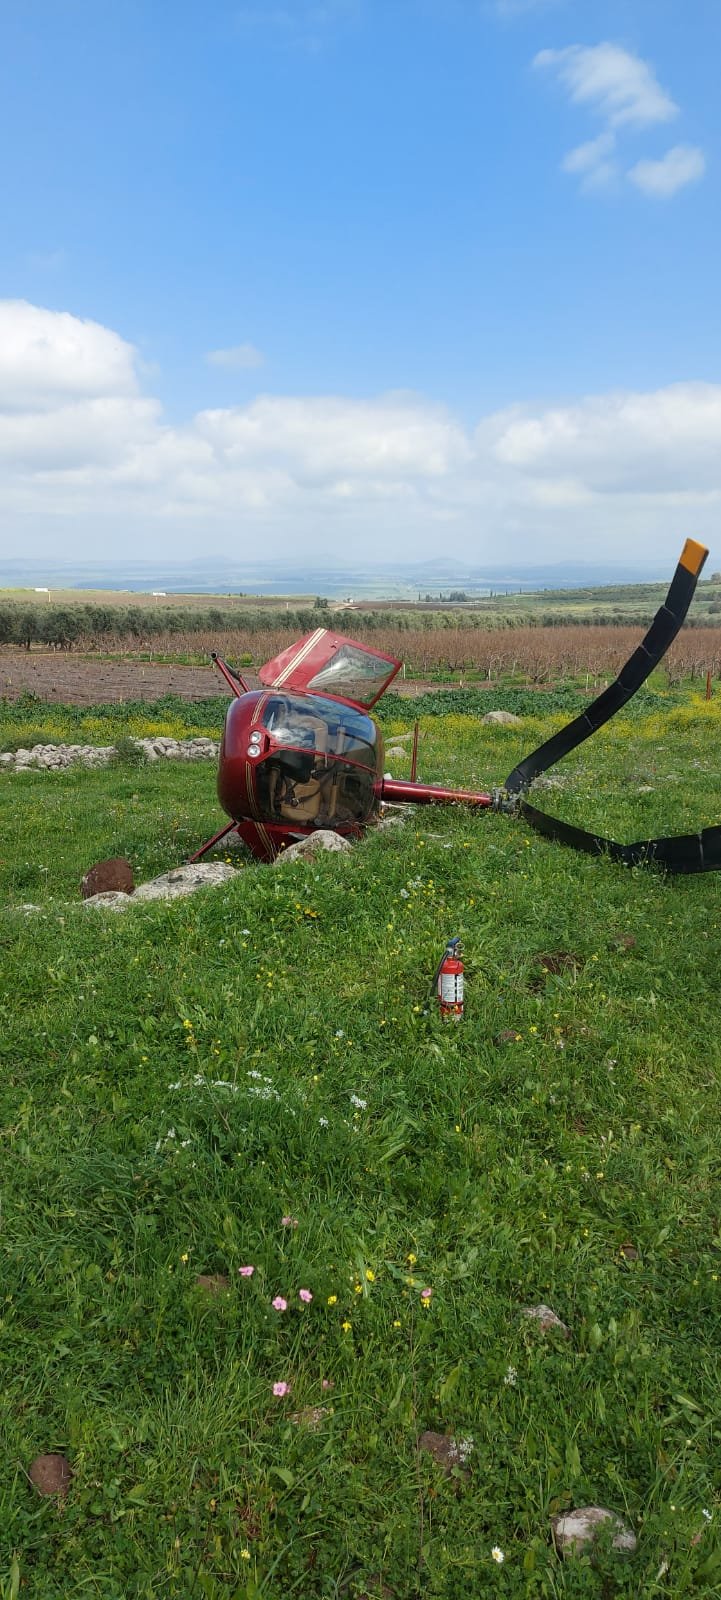 سقوط طائرة خفيفة في منطقة مفتوحة بالقرب من طوبا-0